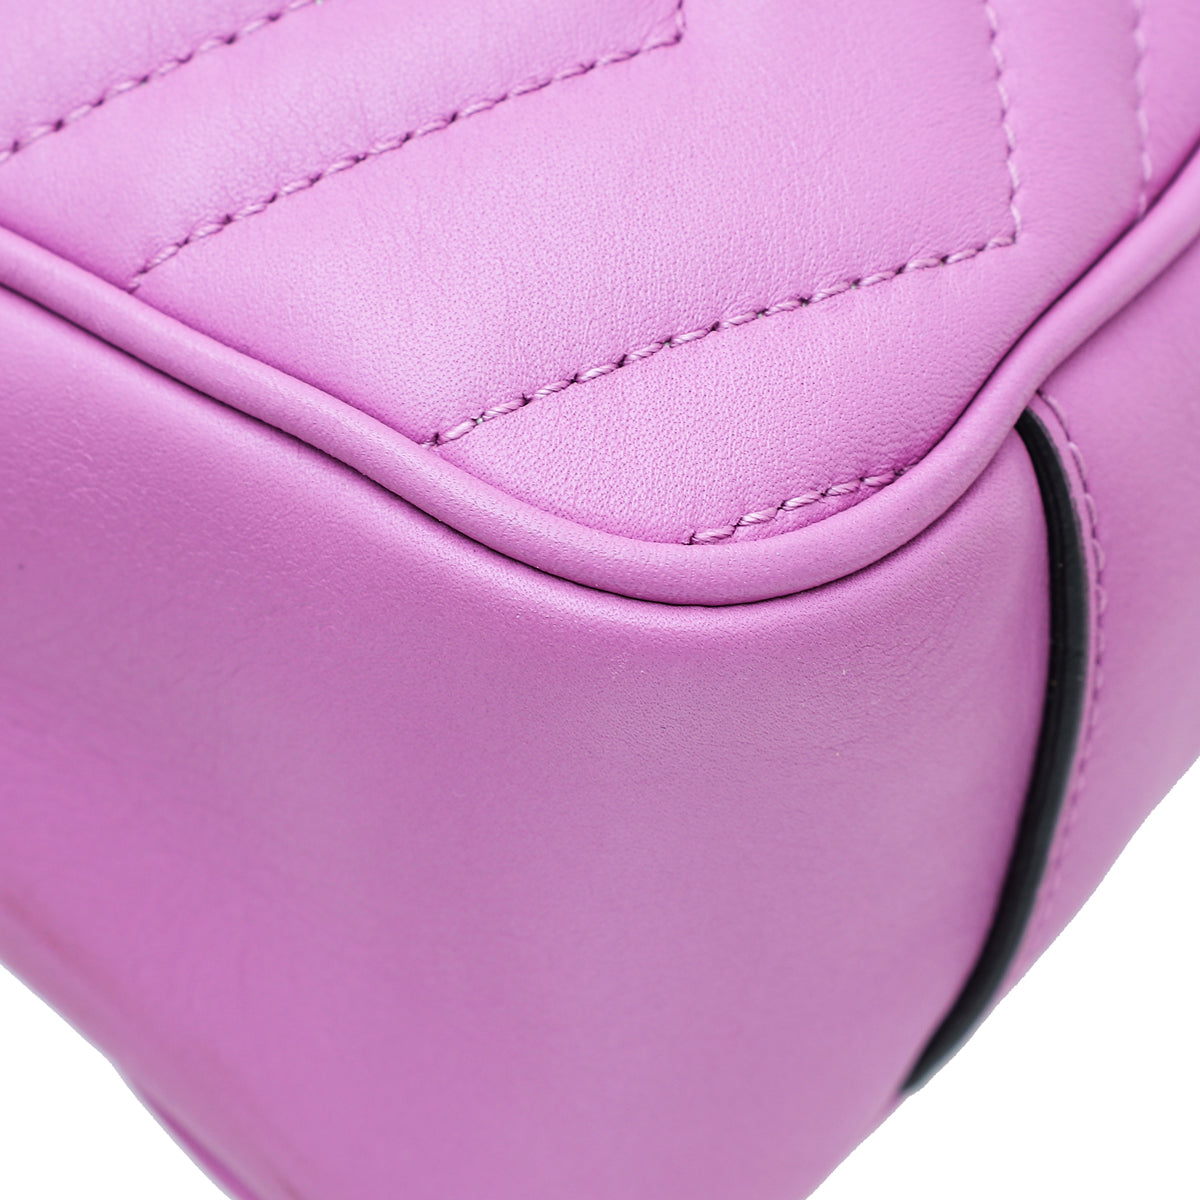 Gucci Purple Leather Marmont Shoulder Bag